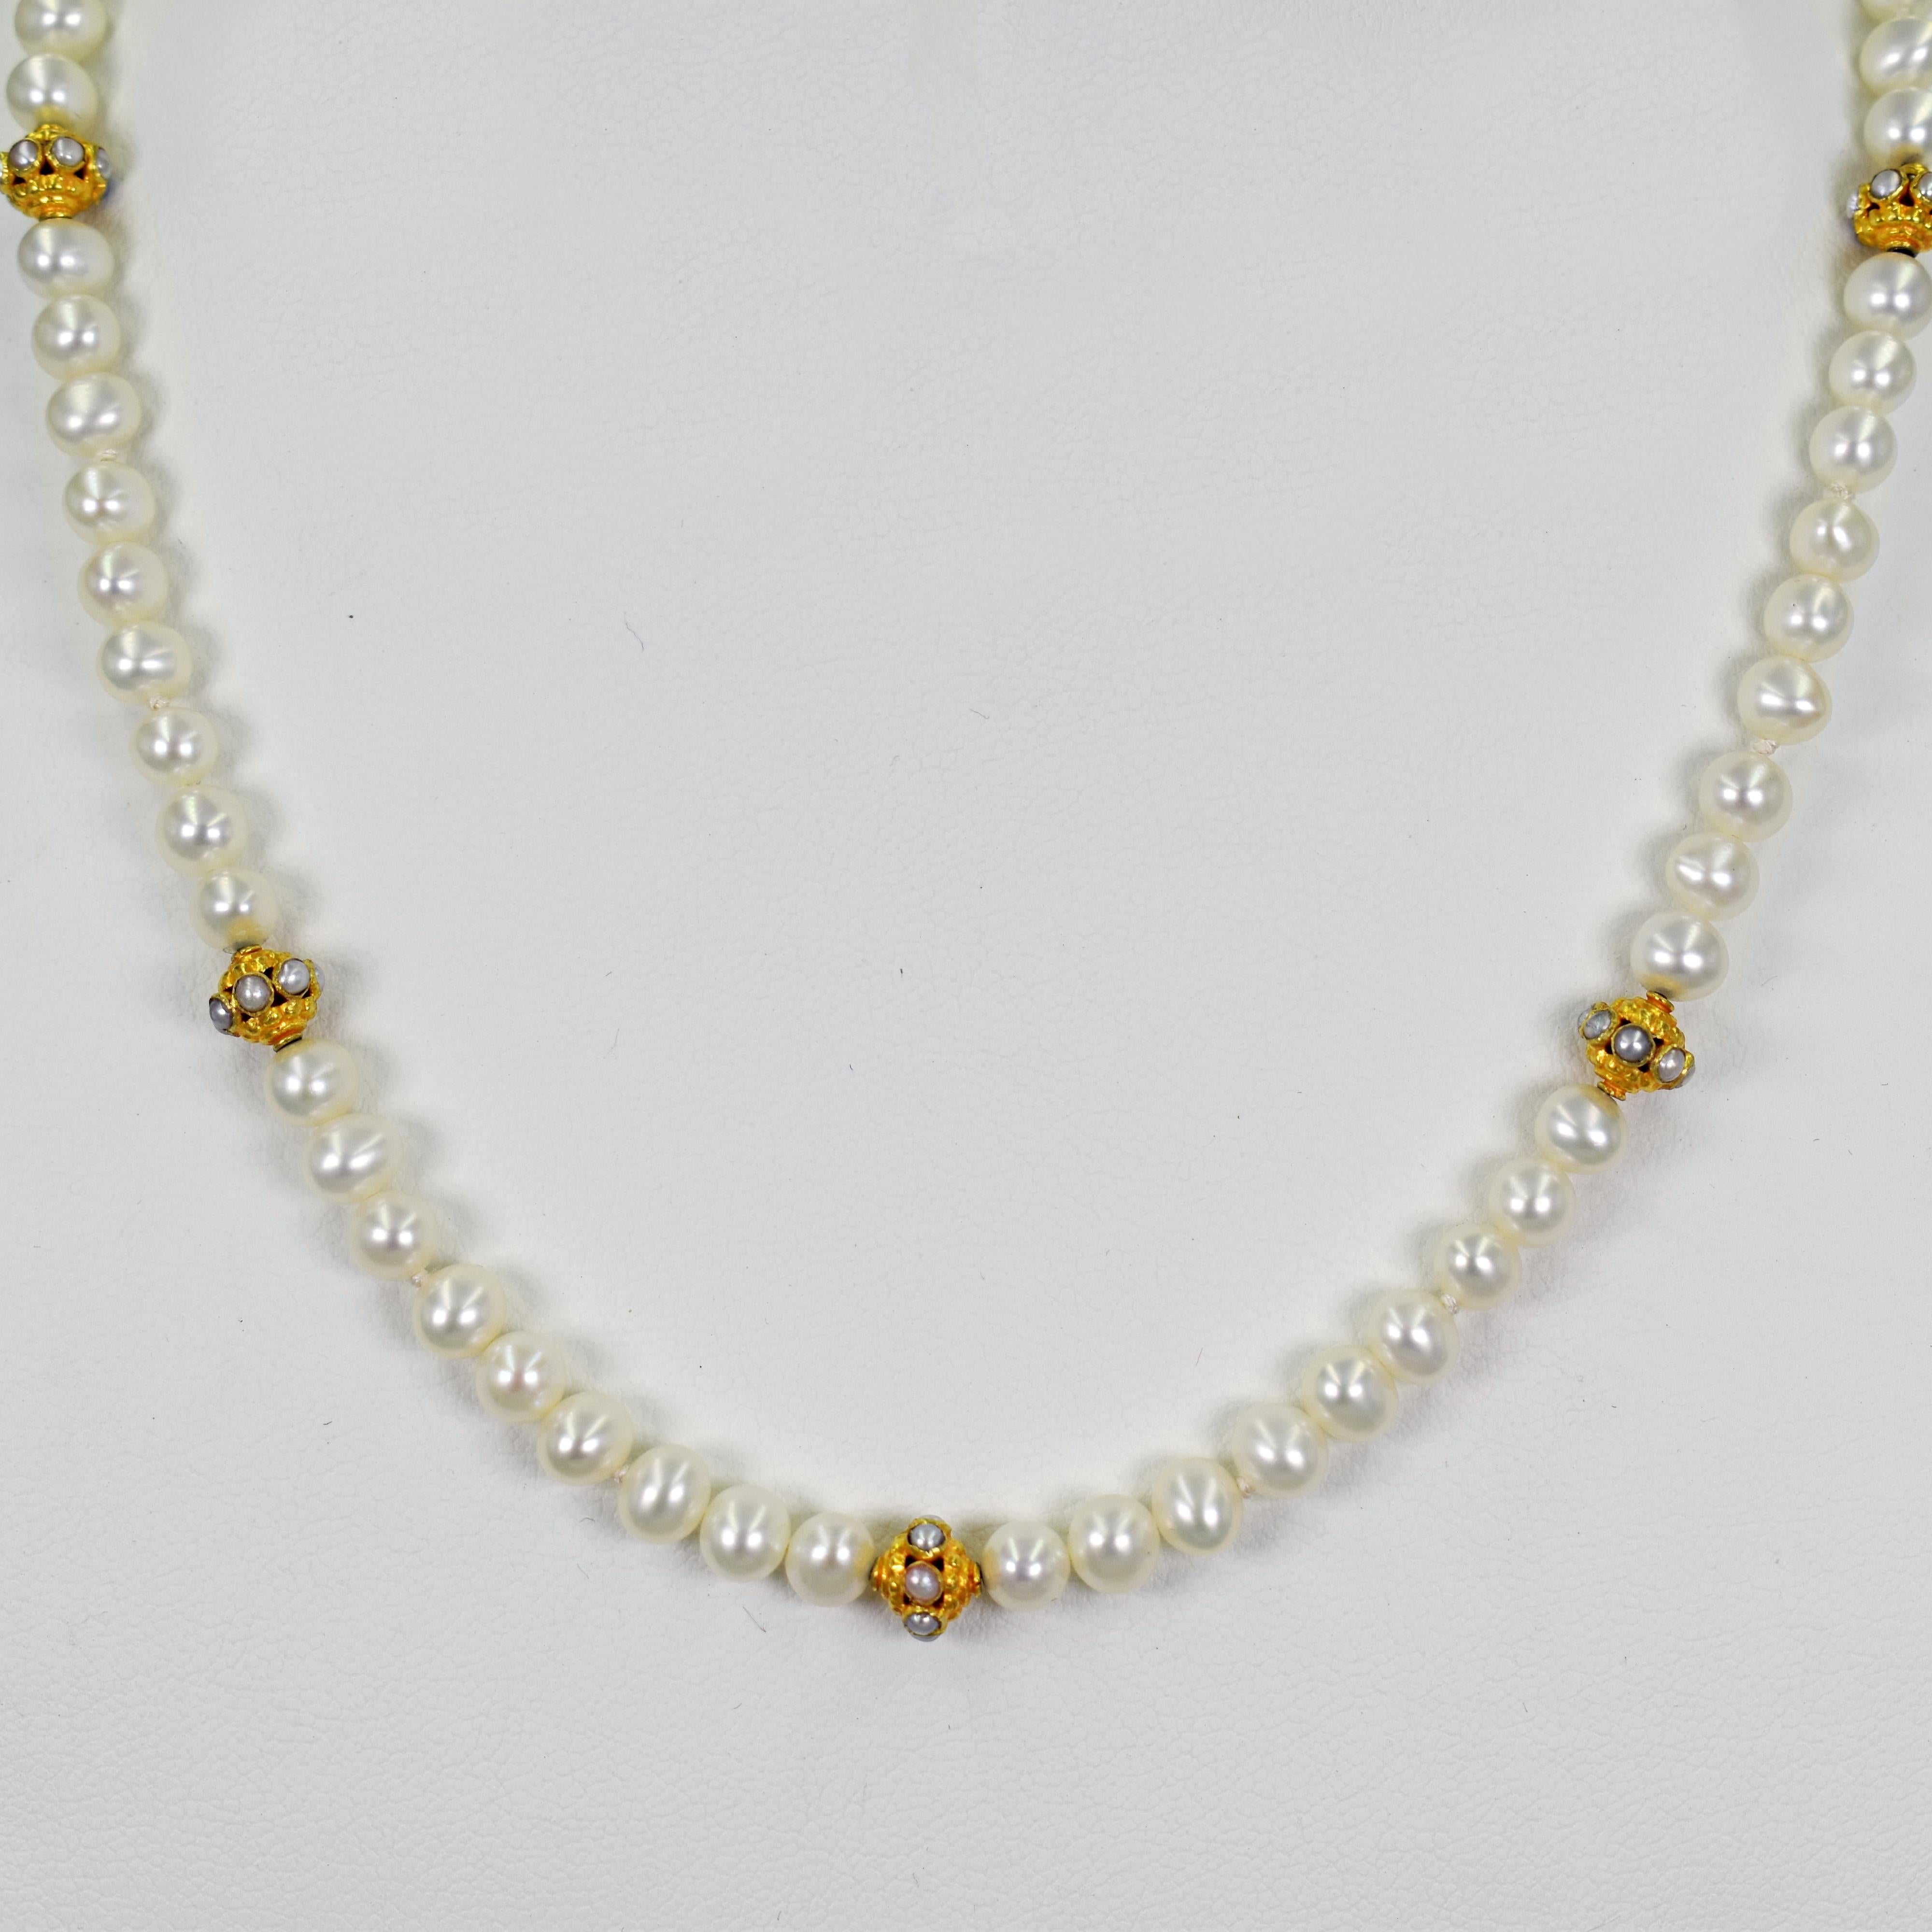 Collier noué en perles d'eau douce, perles de rocaille et perles en or jaune 22k. Le collier est terminé par un fermoir à bascule en or 22k. La longueur du fil de perles perlées est de 16,5 pouces. 